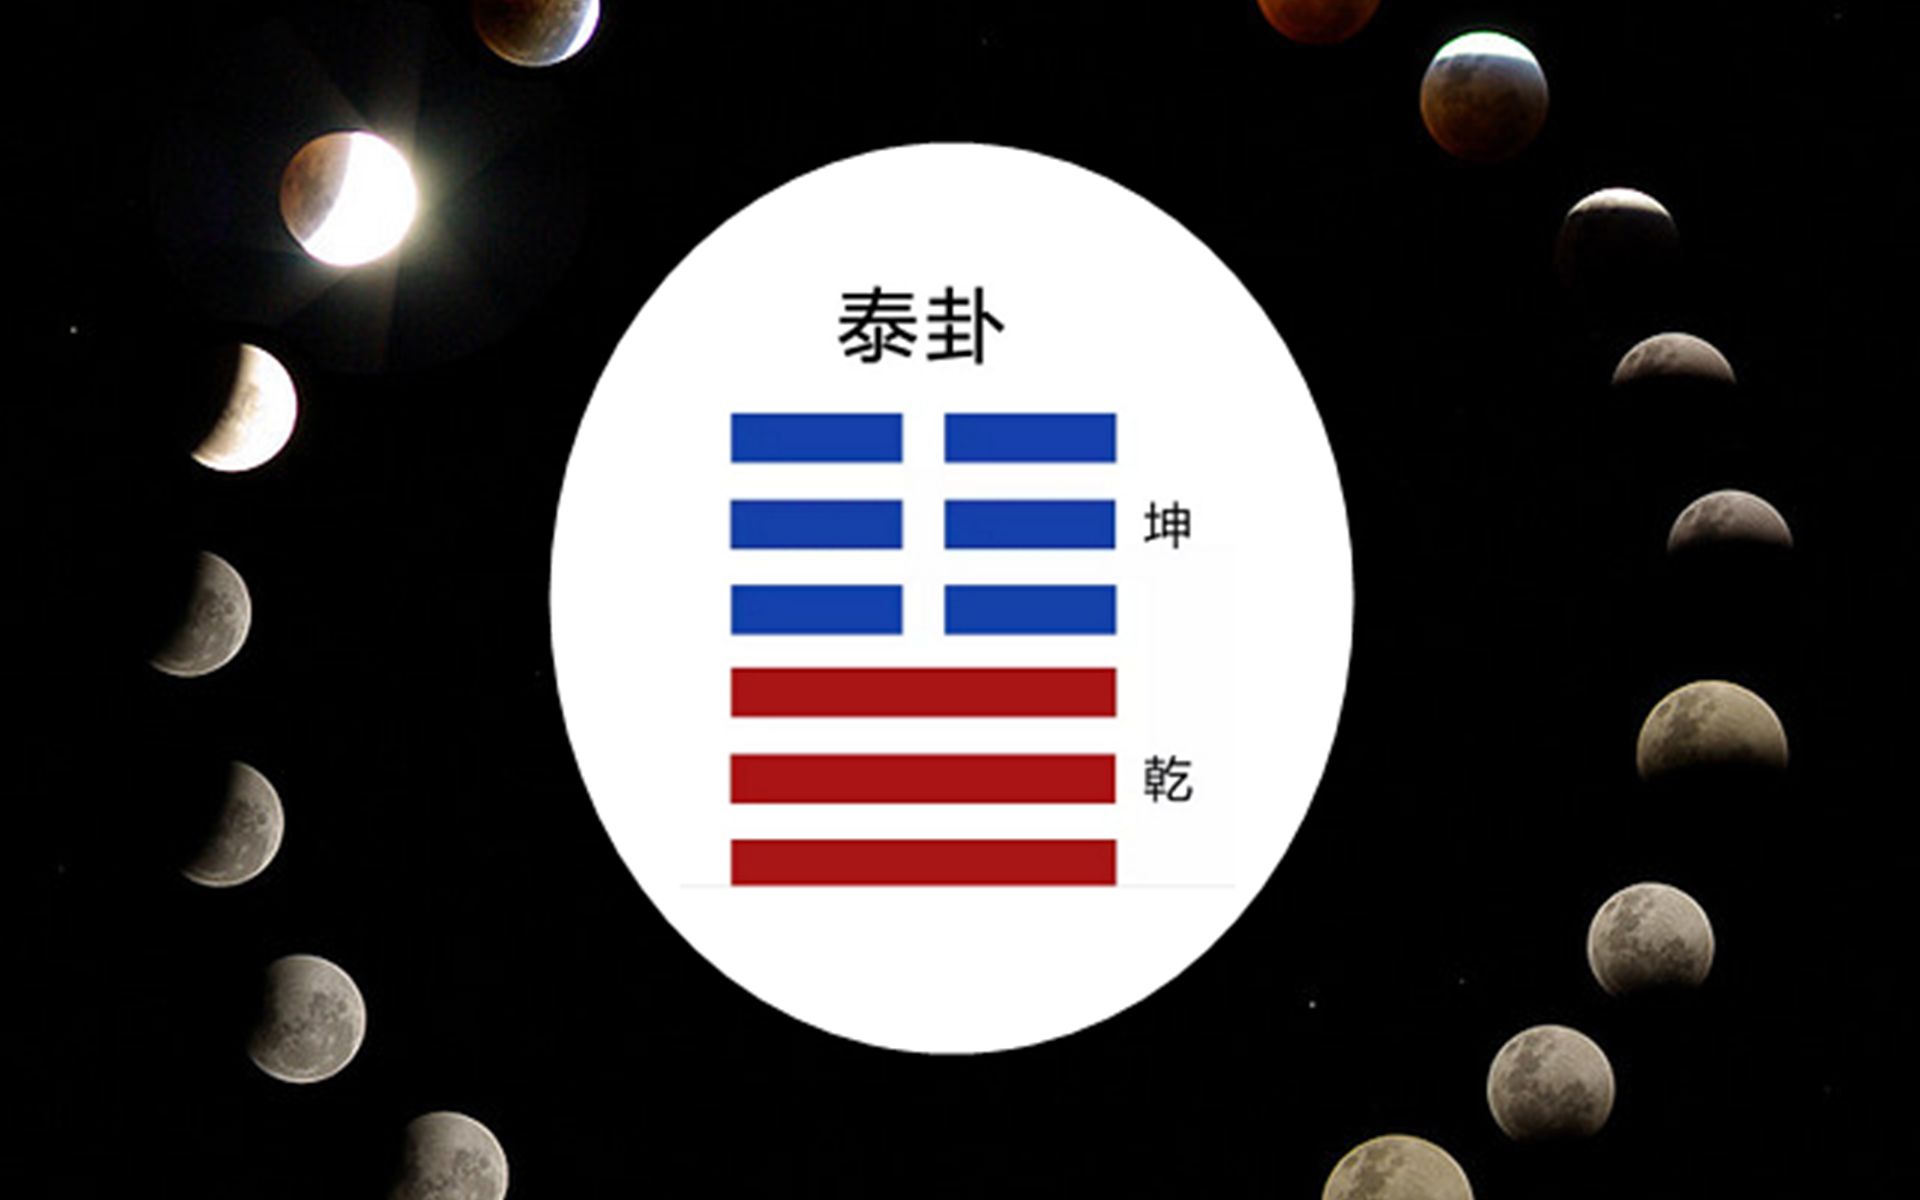 泰卦logo图片